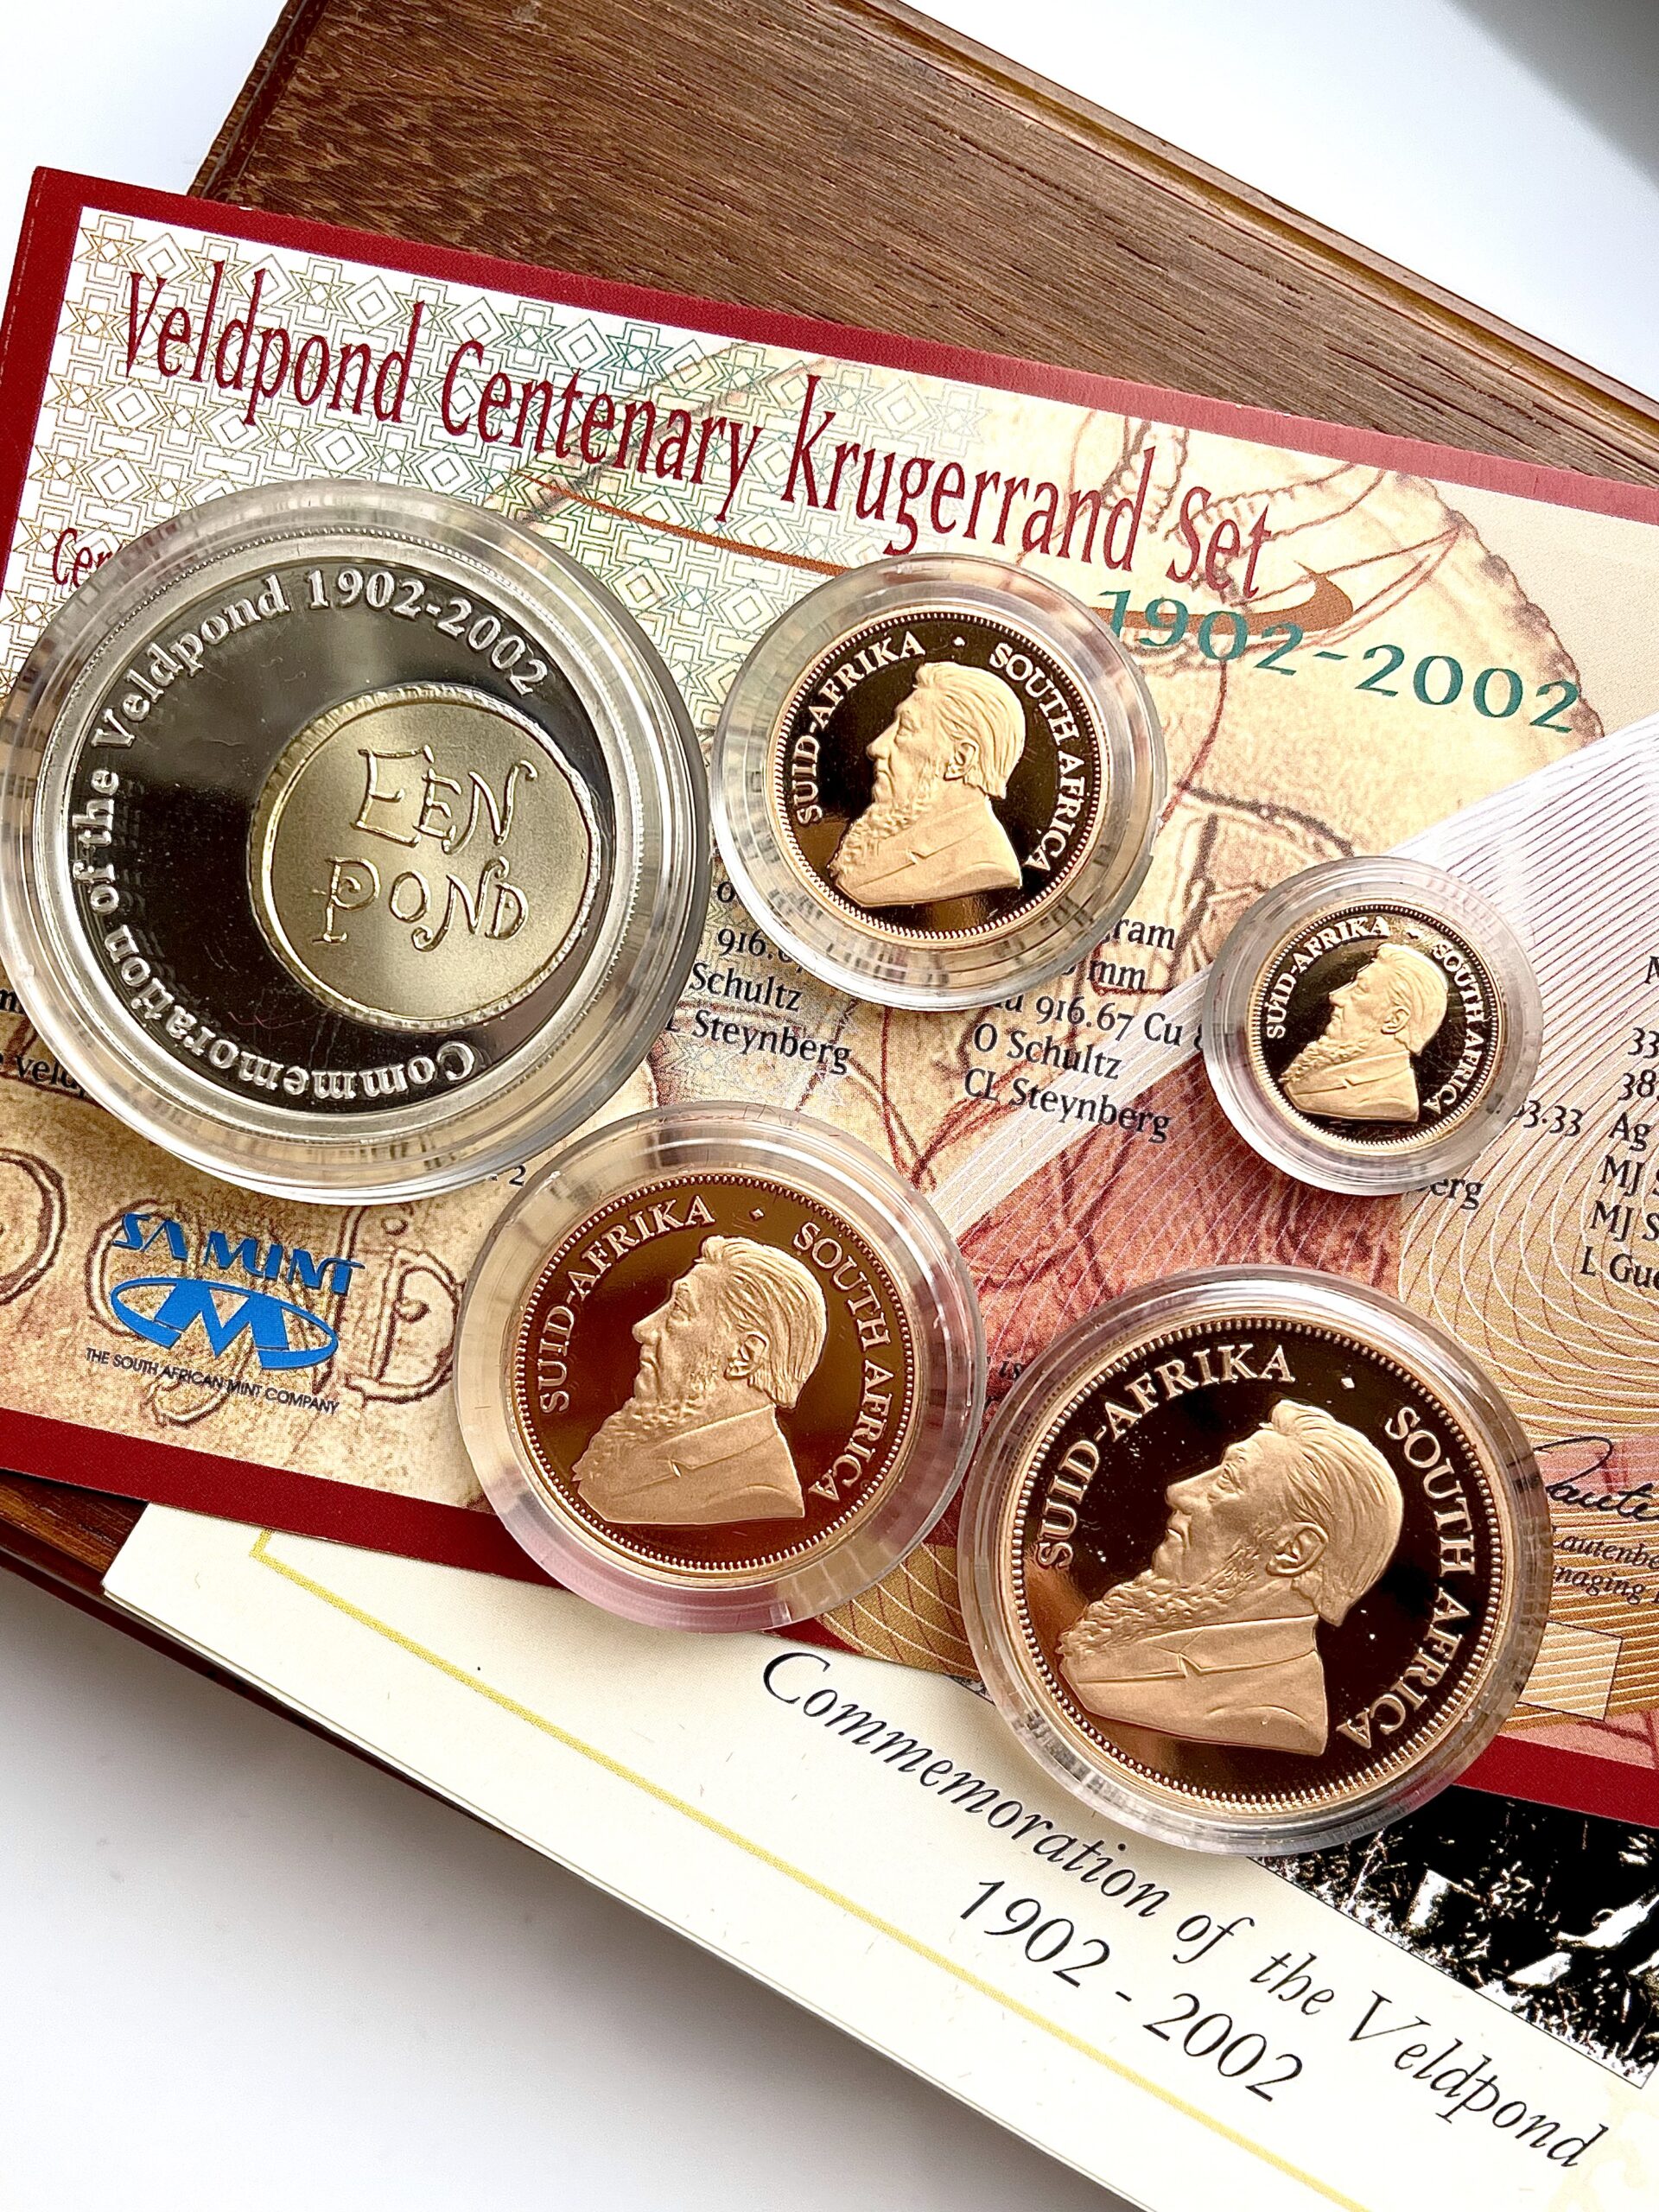 Набор Kruegrand 2002, посвященный столетию Вельдпонда